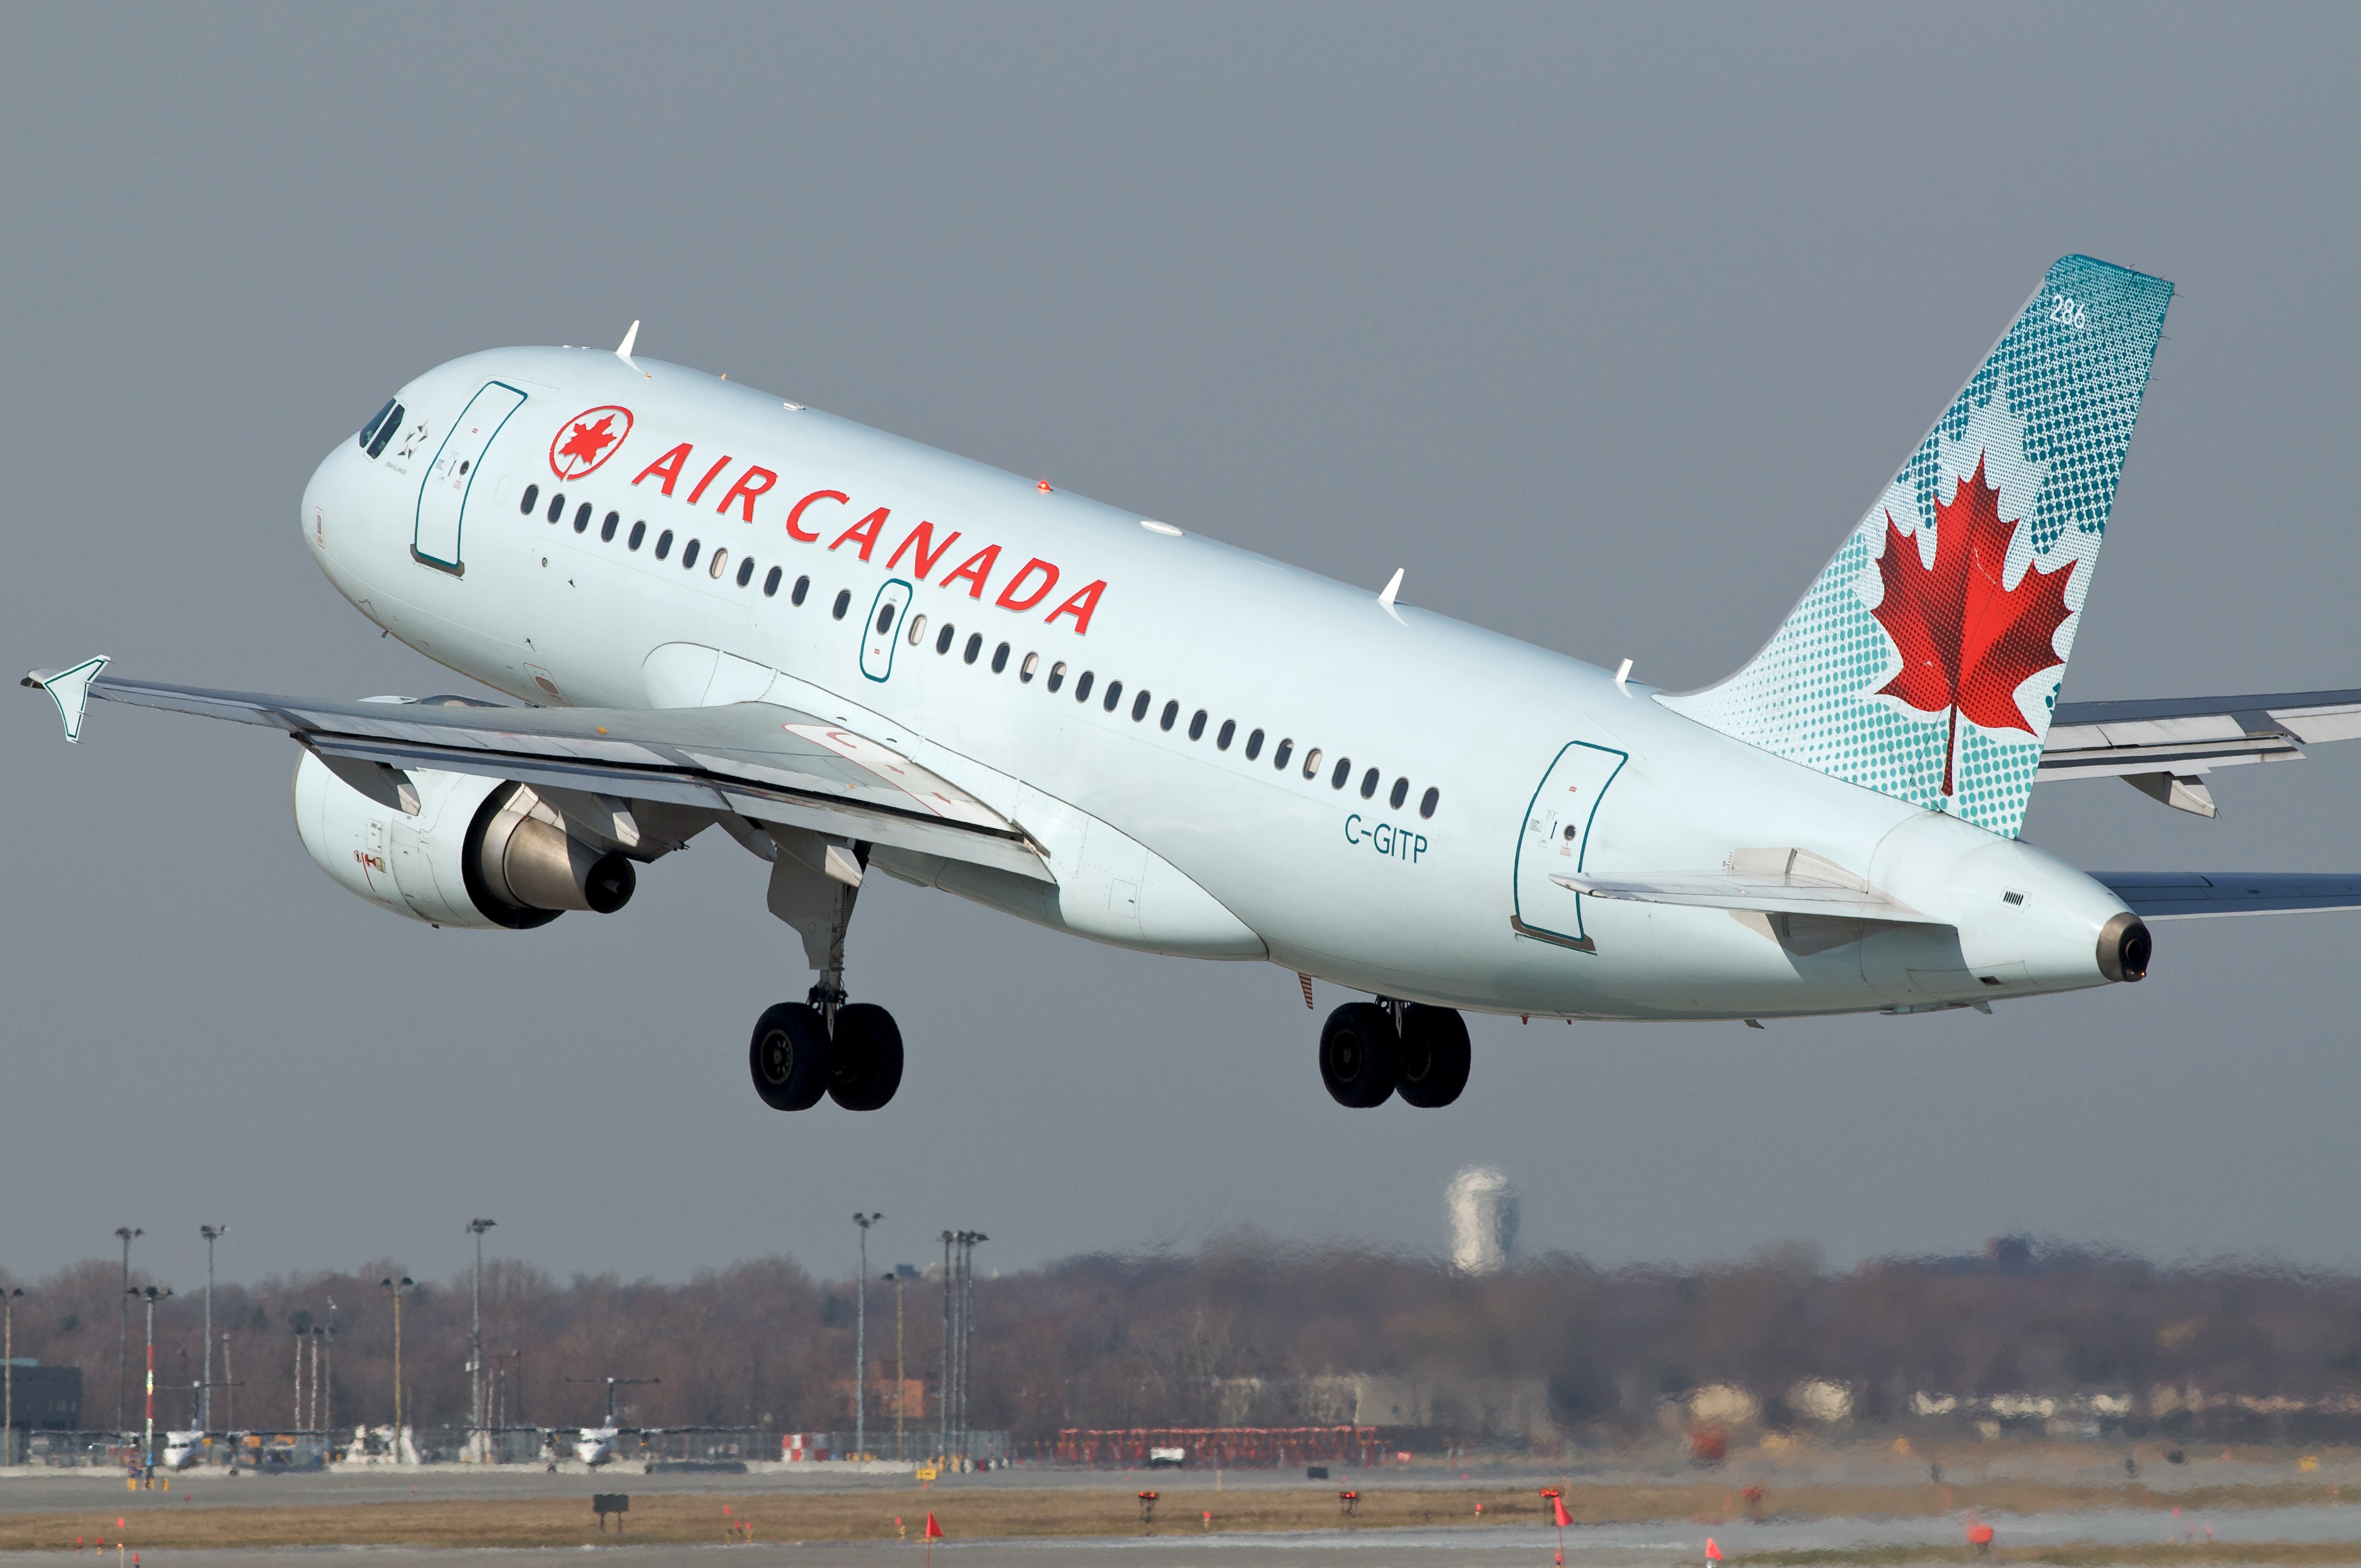 Air Canada A319 C-GITP departing YUL